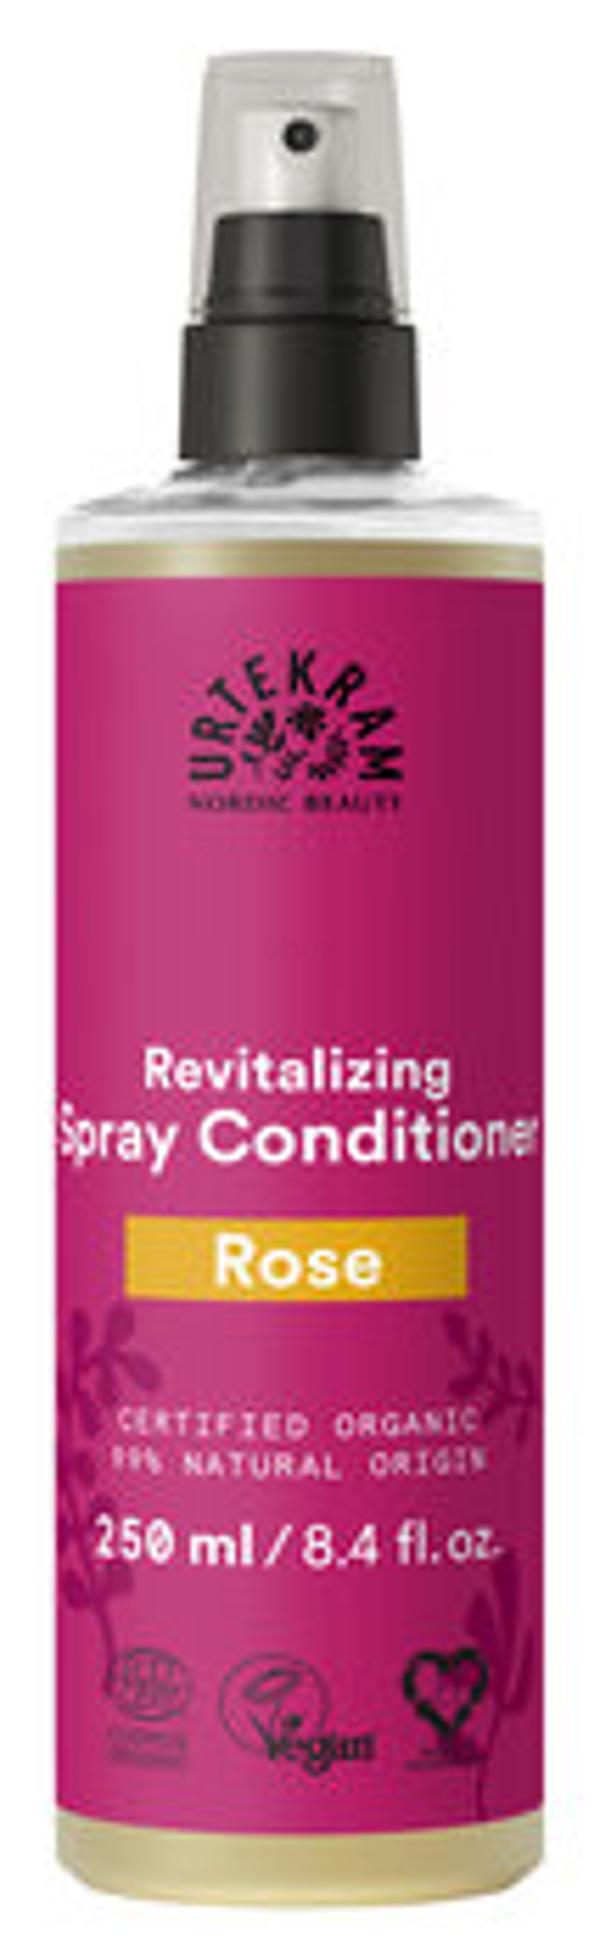 Produktfoto zu Revitalizing Spray Conditioner Rose